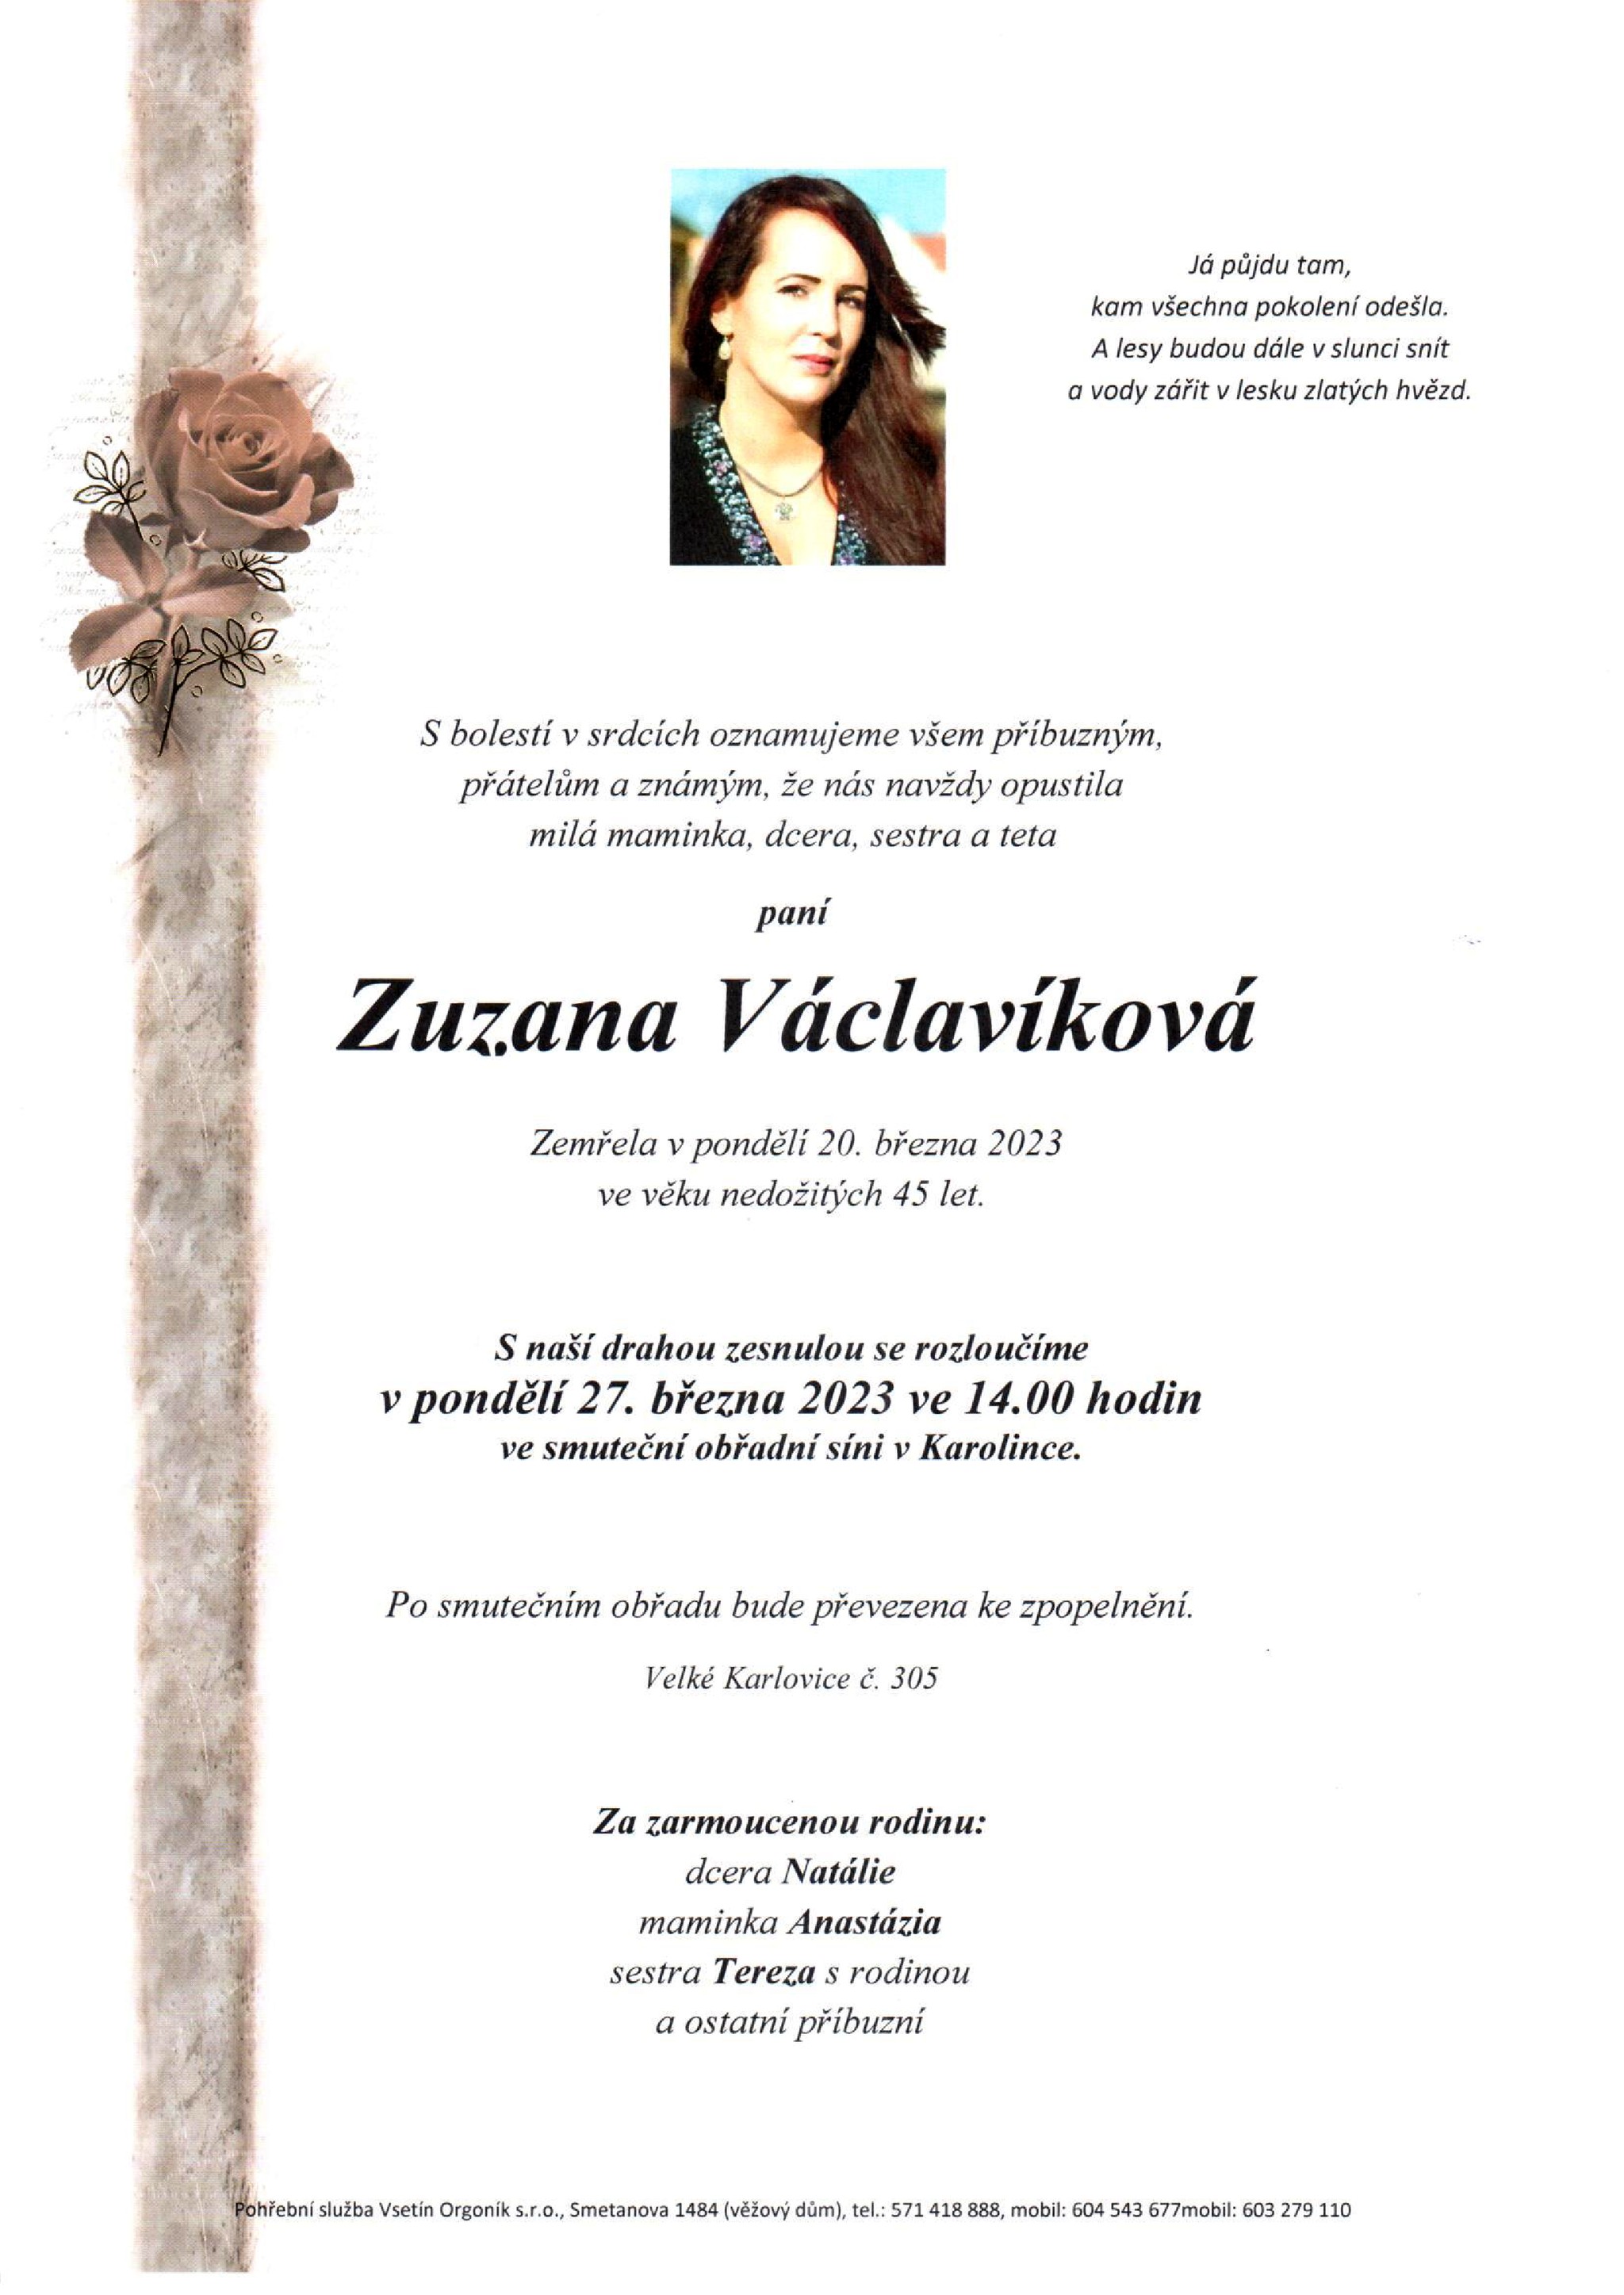 Zuzana Václavíková